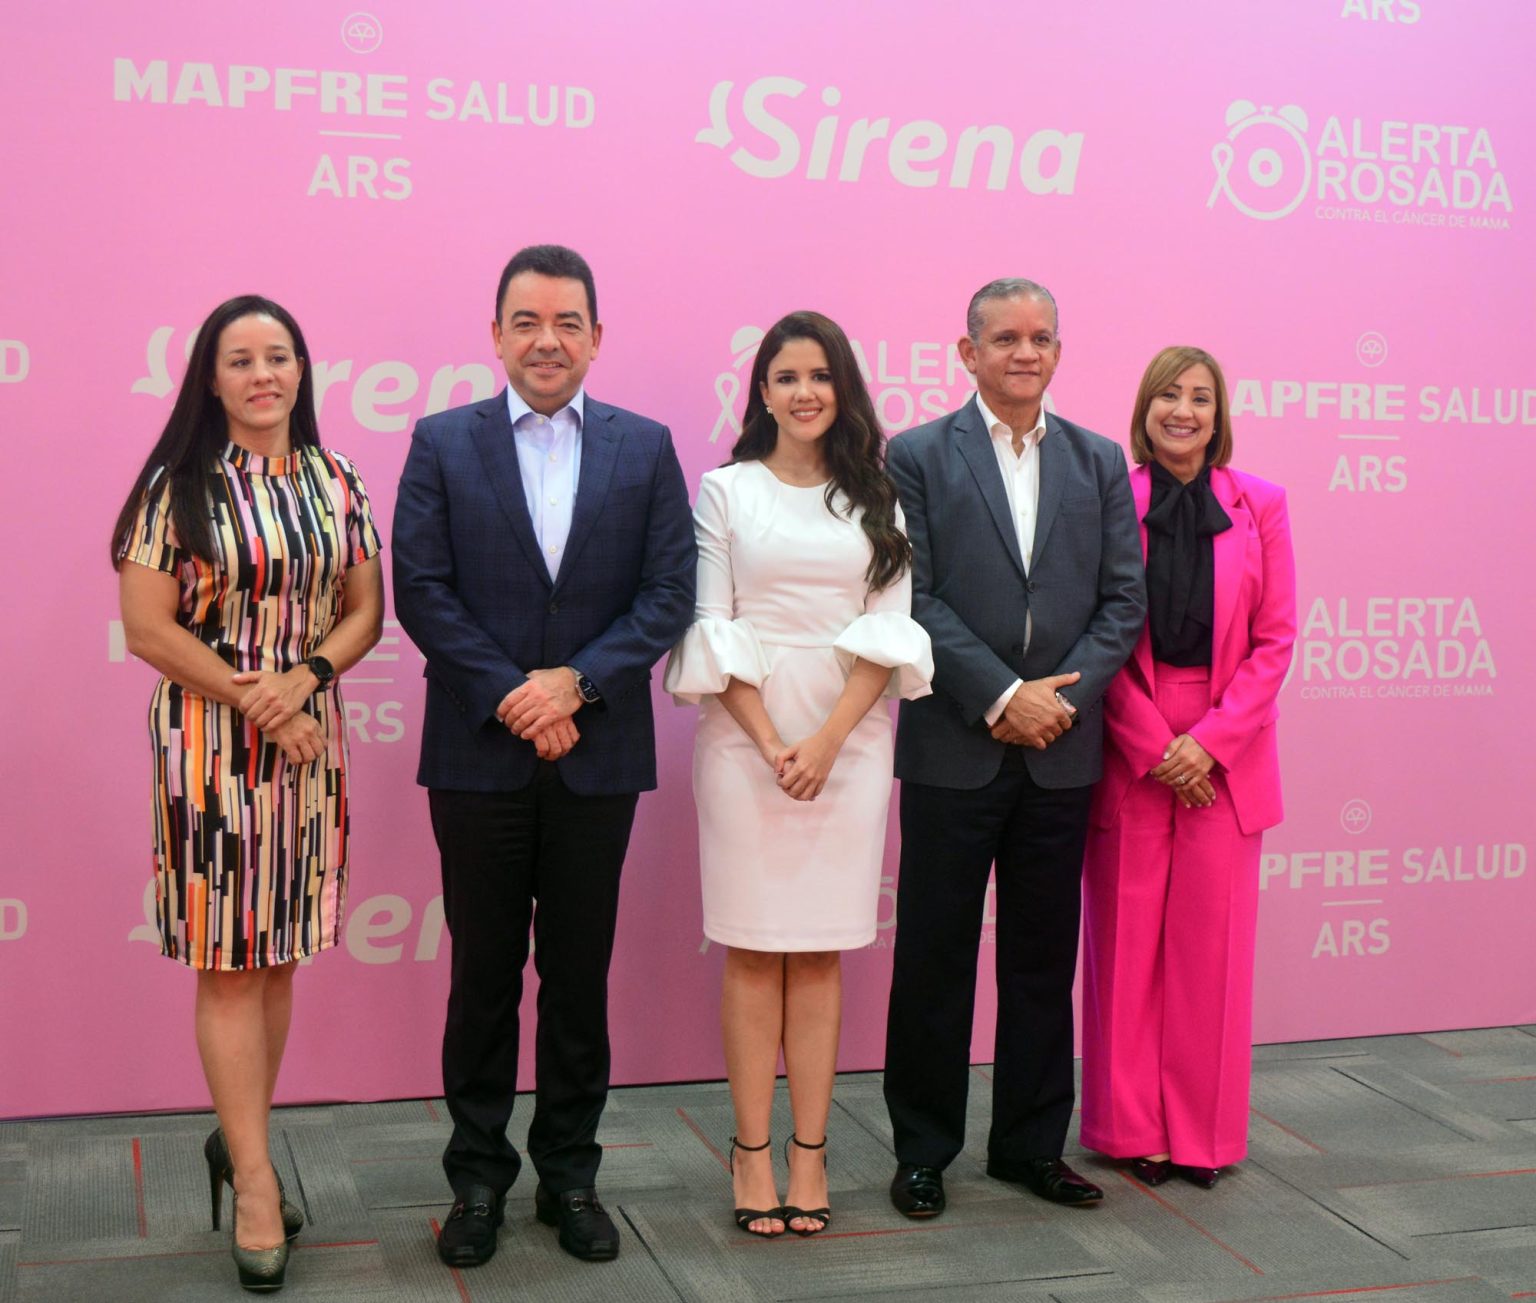 MAPFRE Salud ARS y Sirena te invitan a la 9na Jornada Alerta Rosada